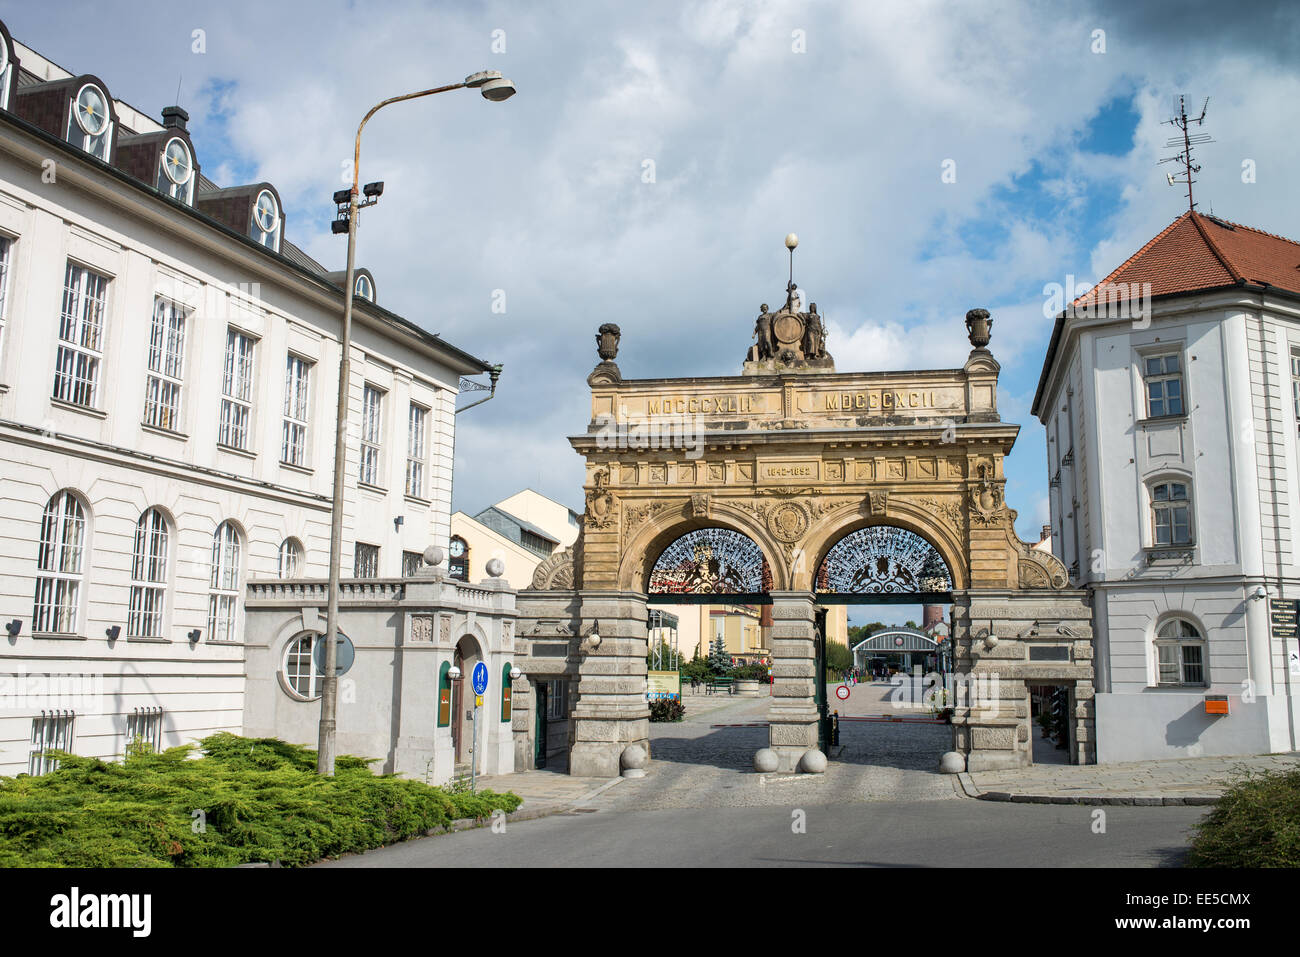 Historic gate, Pilsner Urquell brewery, Pilsen, Bohemia, Czech Republic, Europe Stock Photo